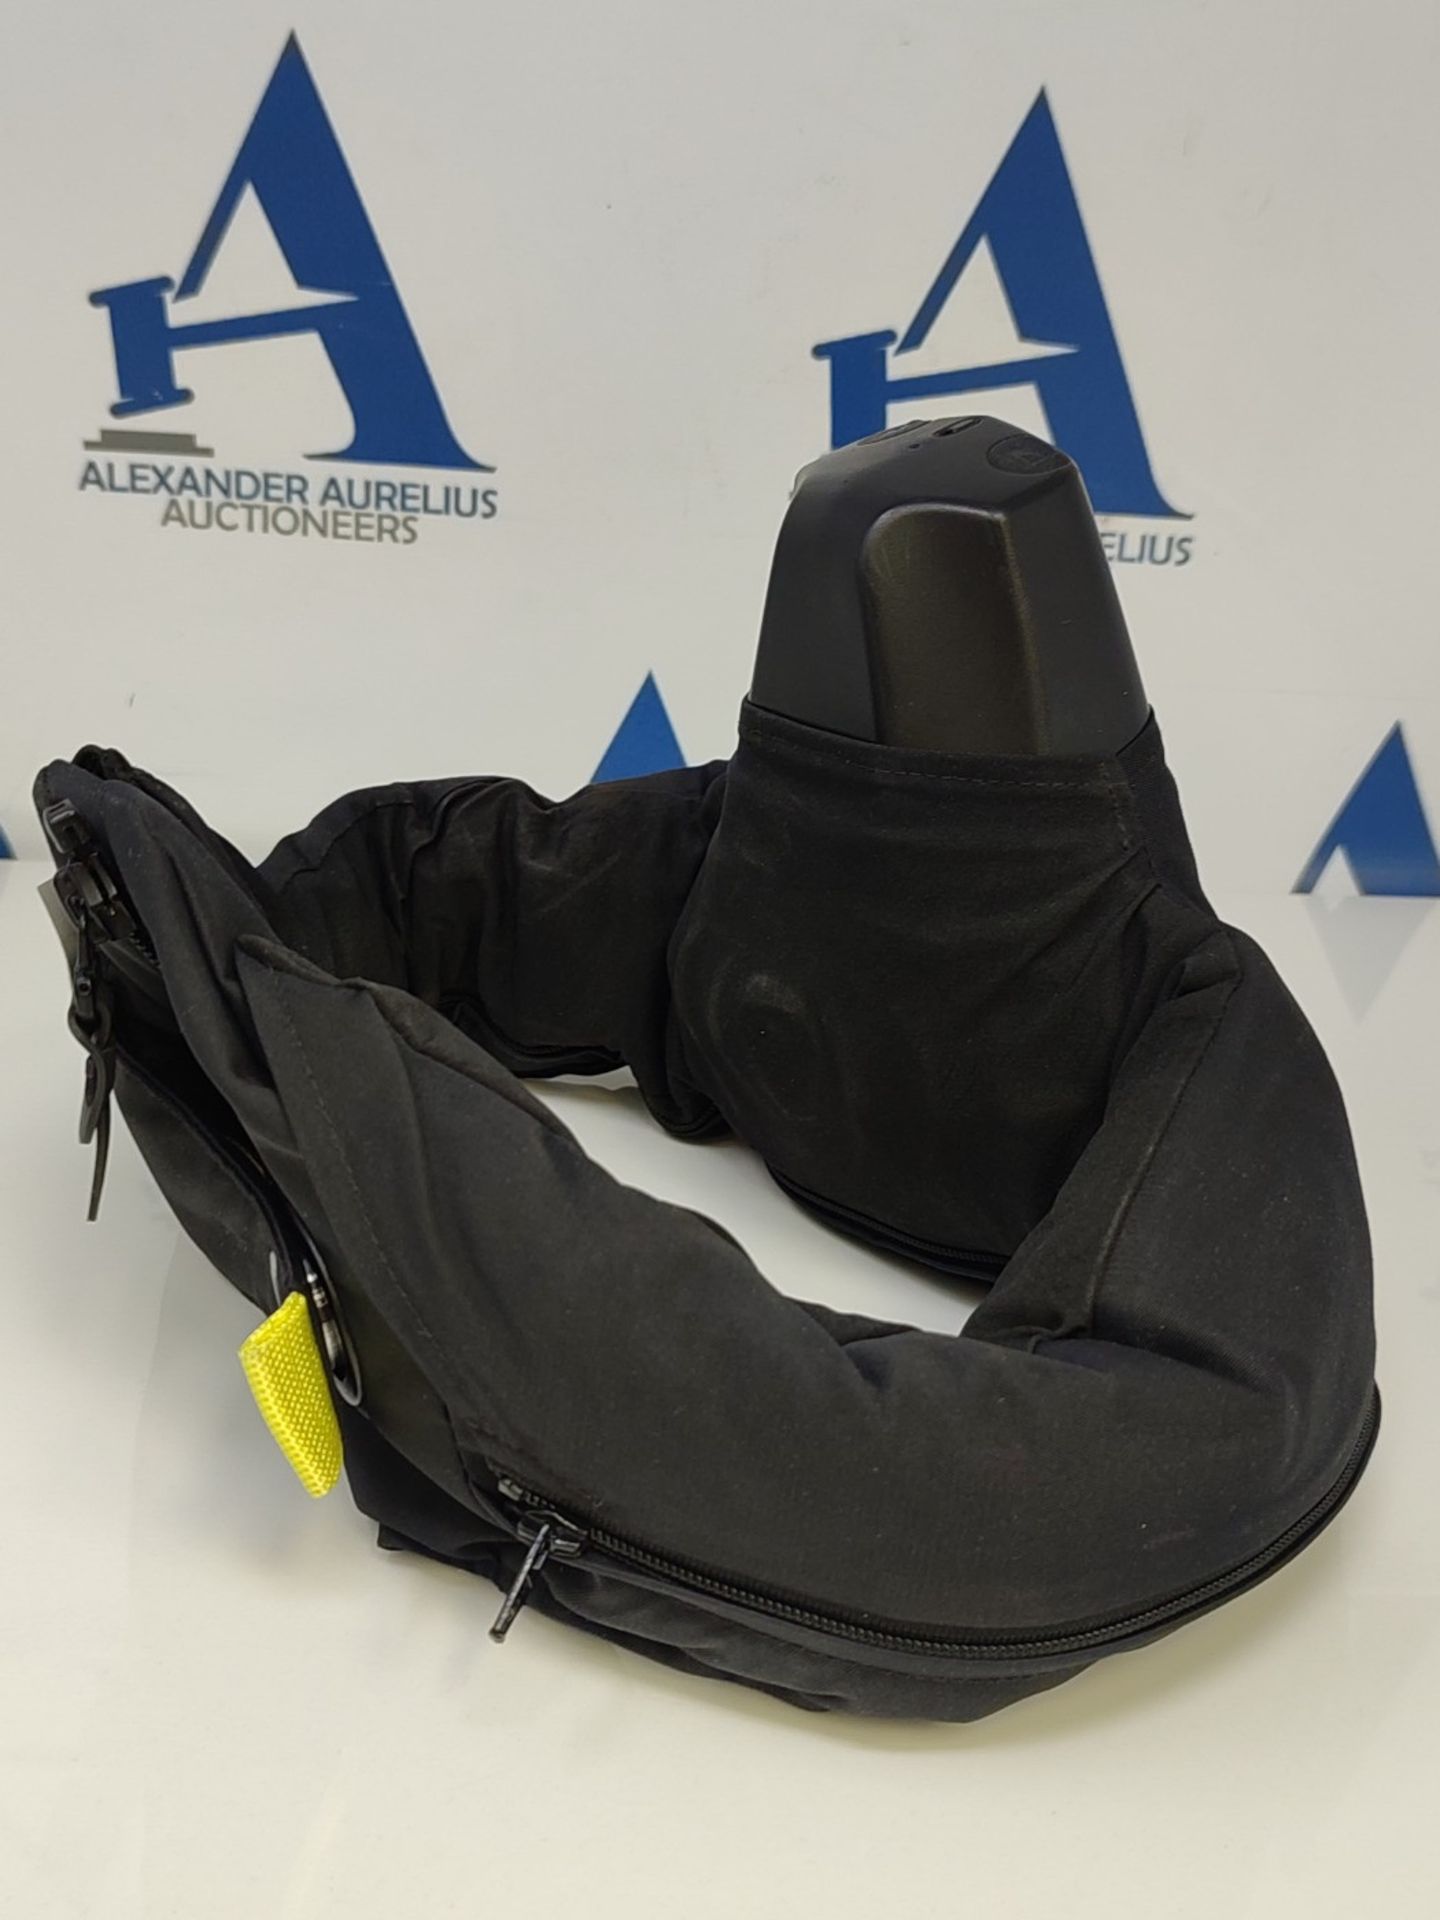 RRP £342.00 Hövding 3 Airbag Helmet Adult-Unisex, Black, 52-59 cm Head circumference - Image 3 of 3